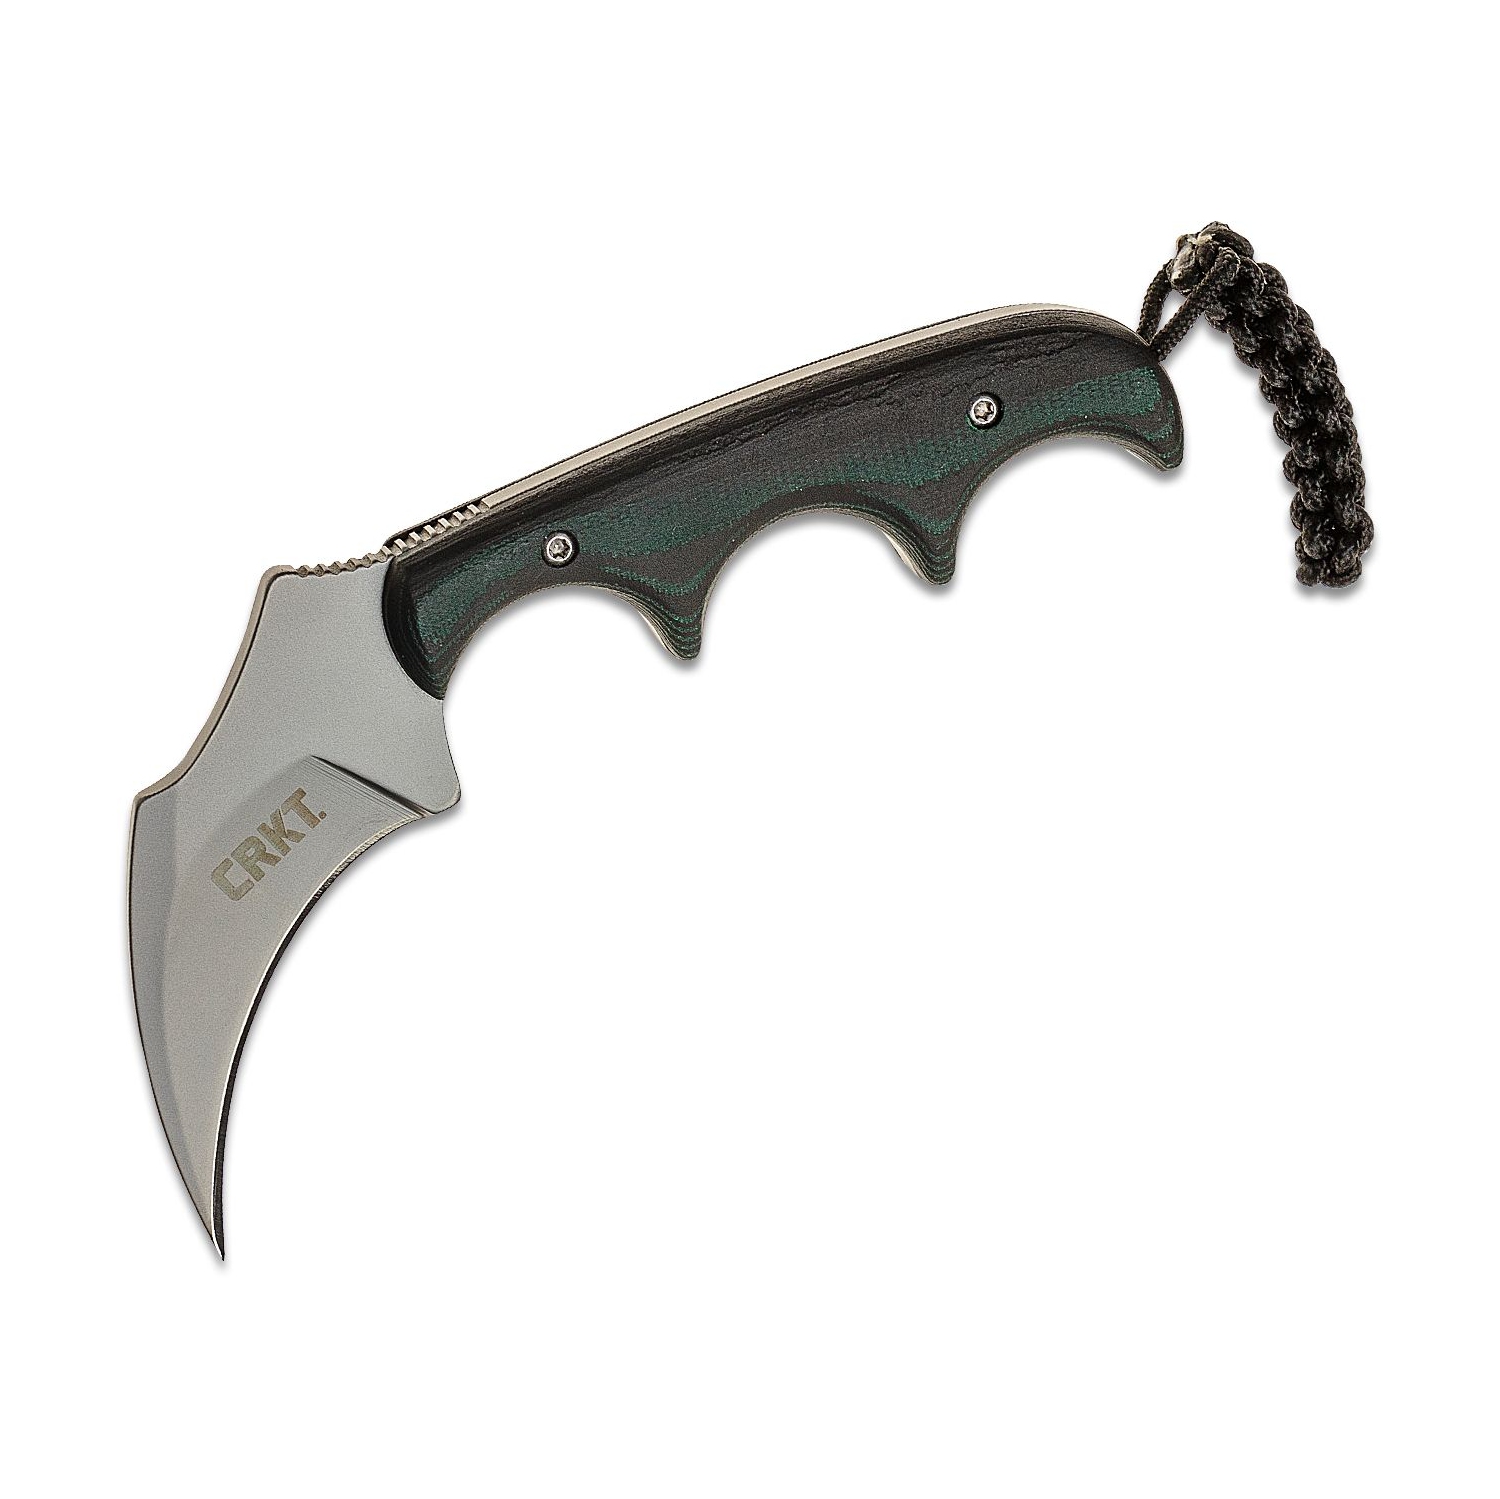 CRKT Folts Minimalist Keramin Fixed Blade Knife (2.31" Bead Blast) 2389